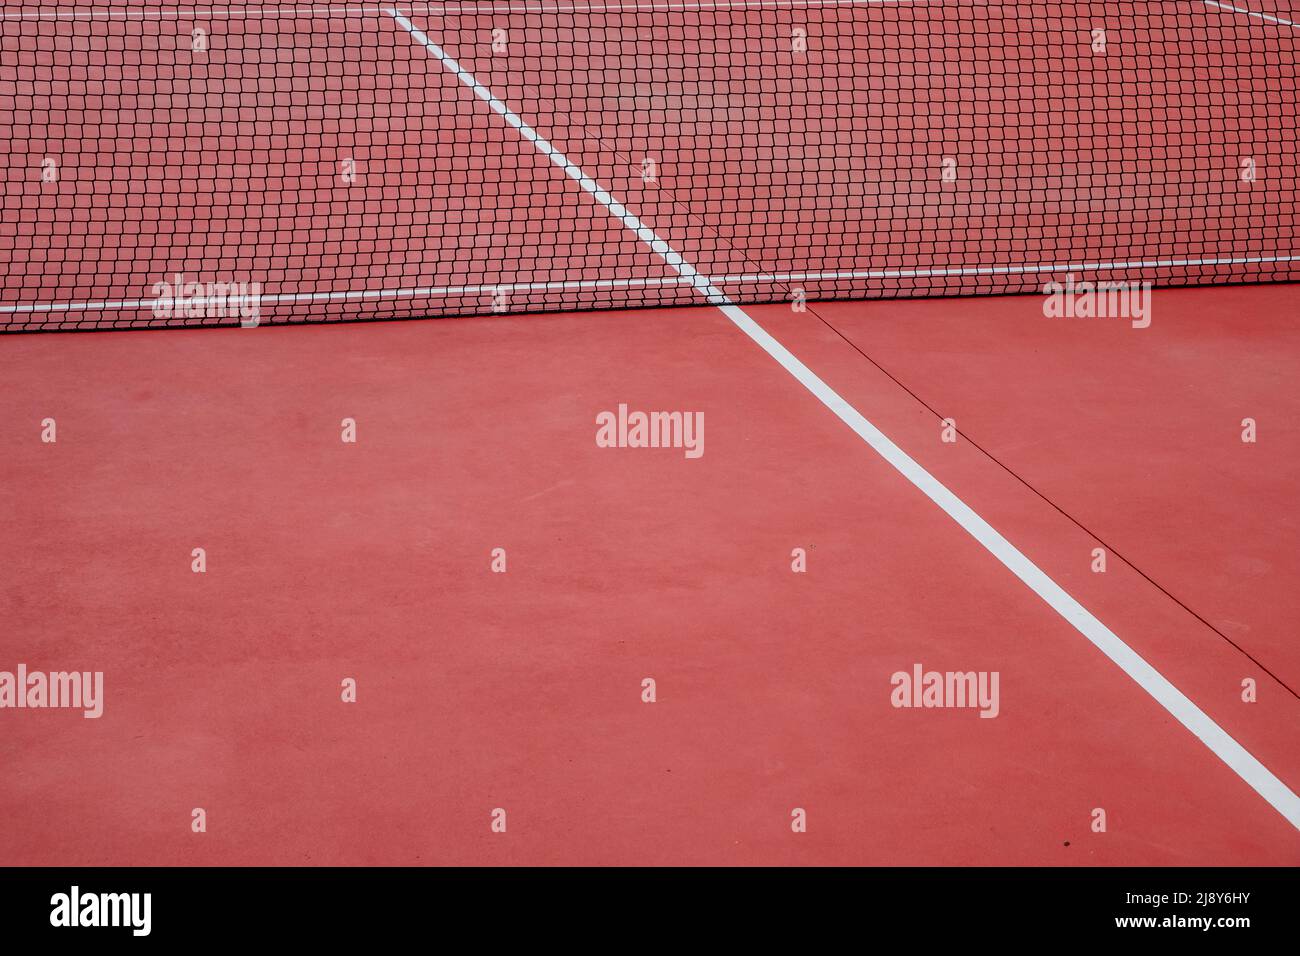 Vue sur un court de tennis rouge en surface dure Banque D'Images